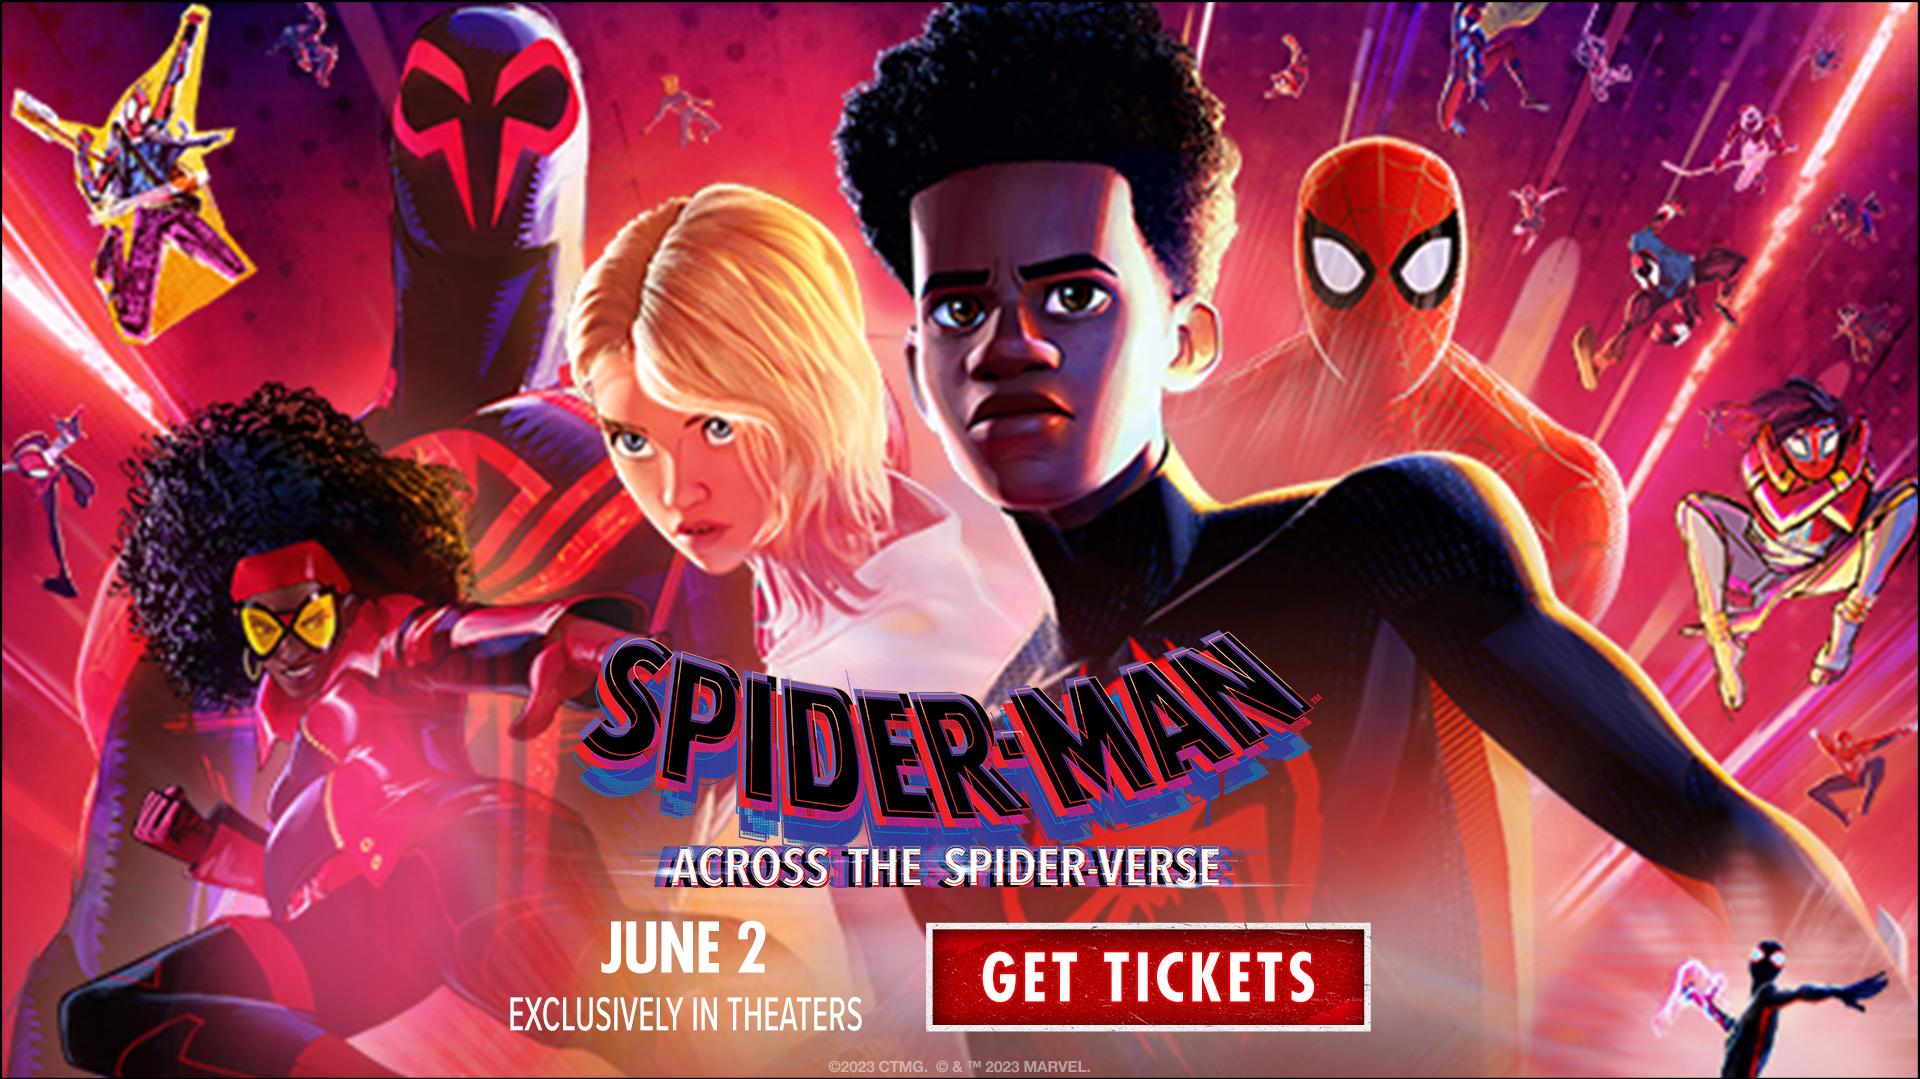 Spider Man Across The Verse Opens At Aurora Cineplex June